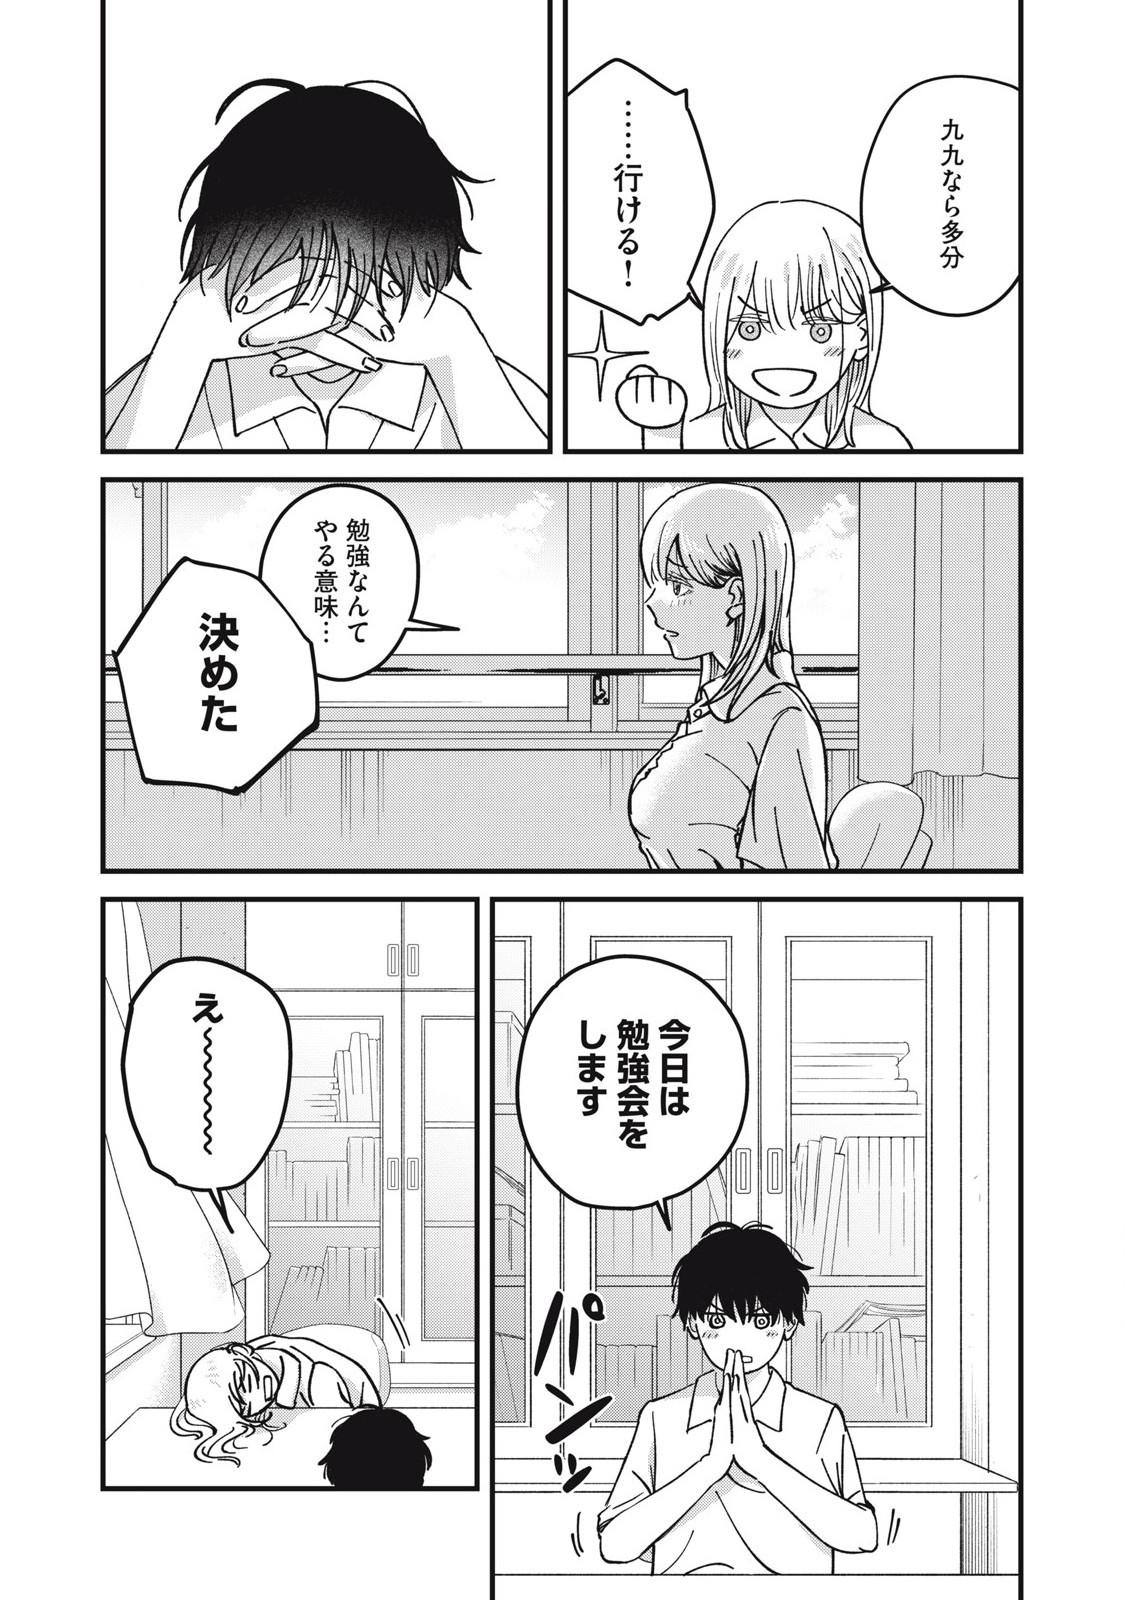 Otona ni Narenai Bokura wa - Chapter 11 - Page 5